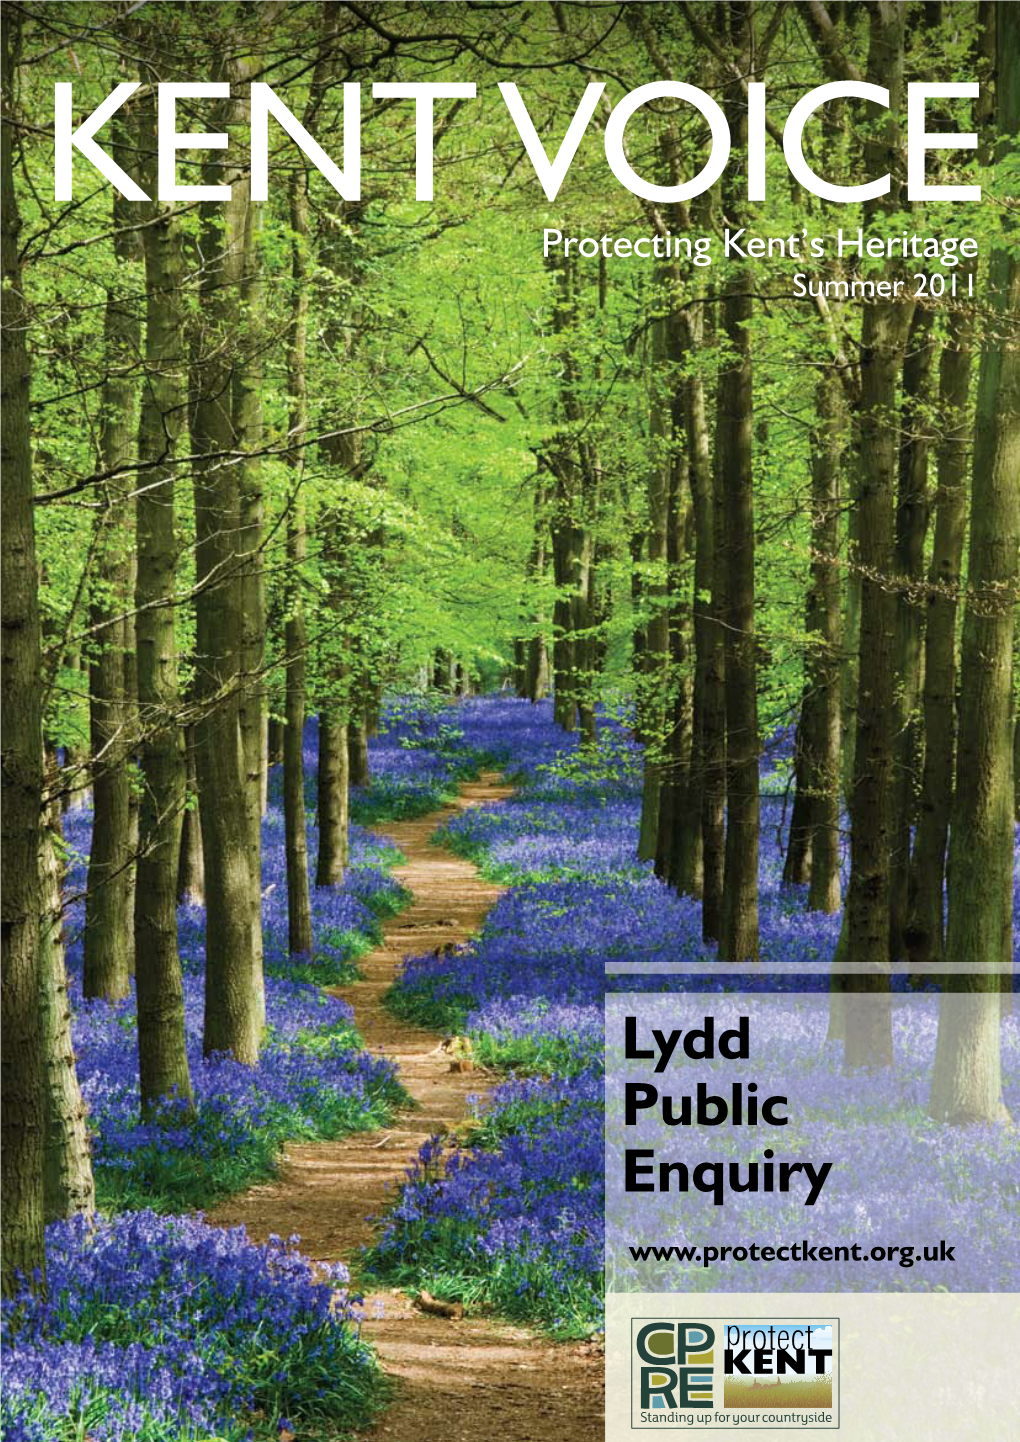 Lydd Public Enquiry